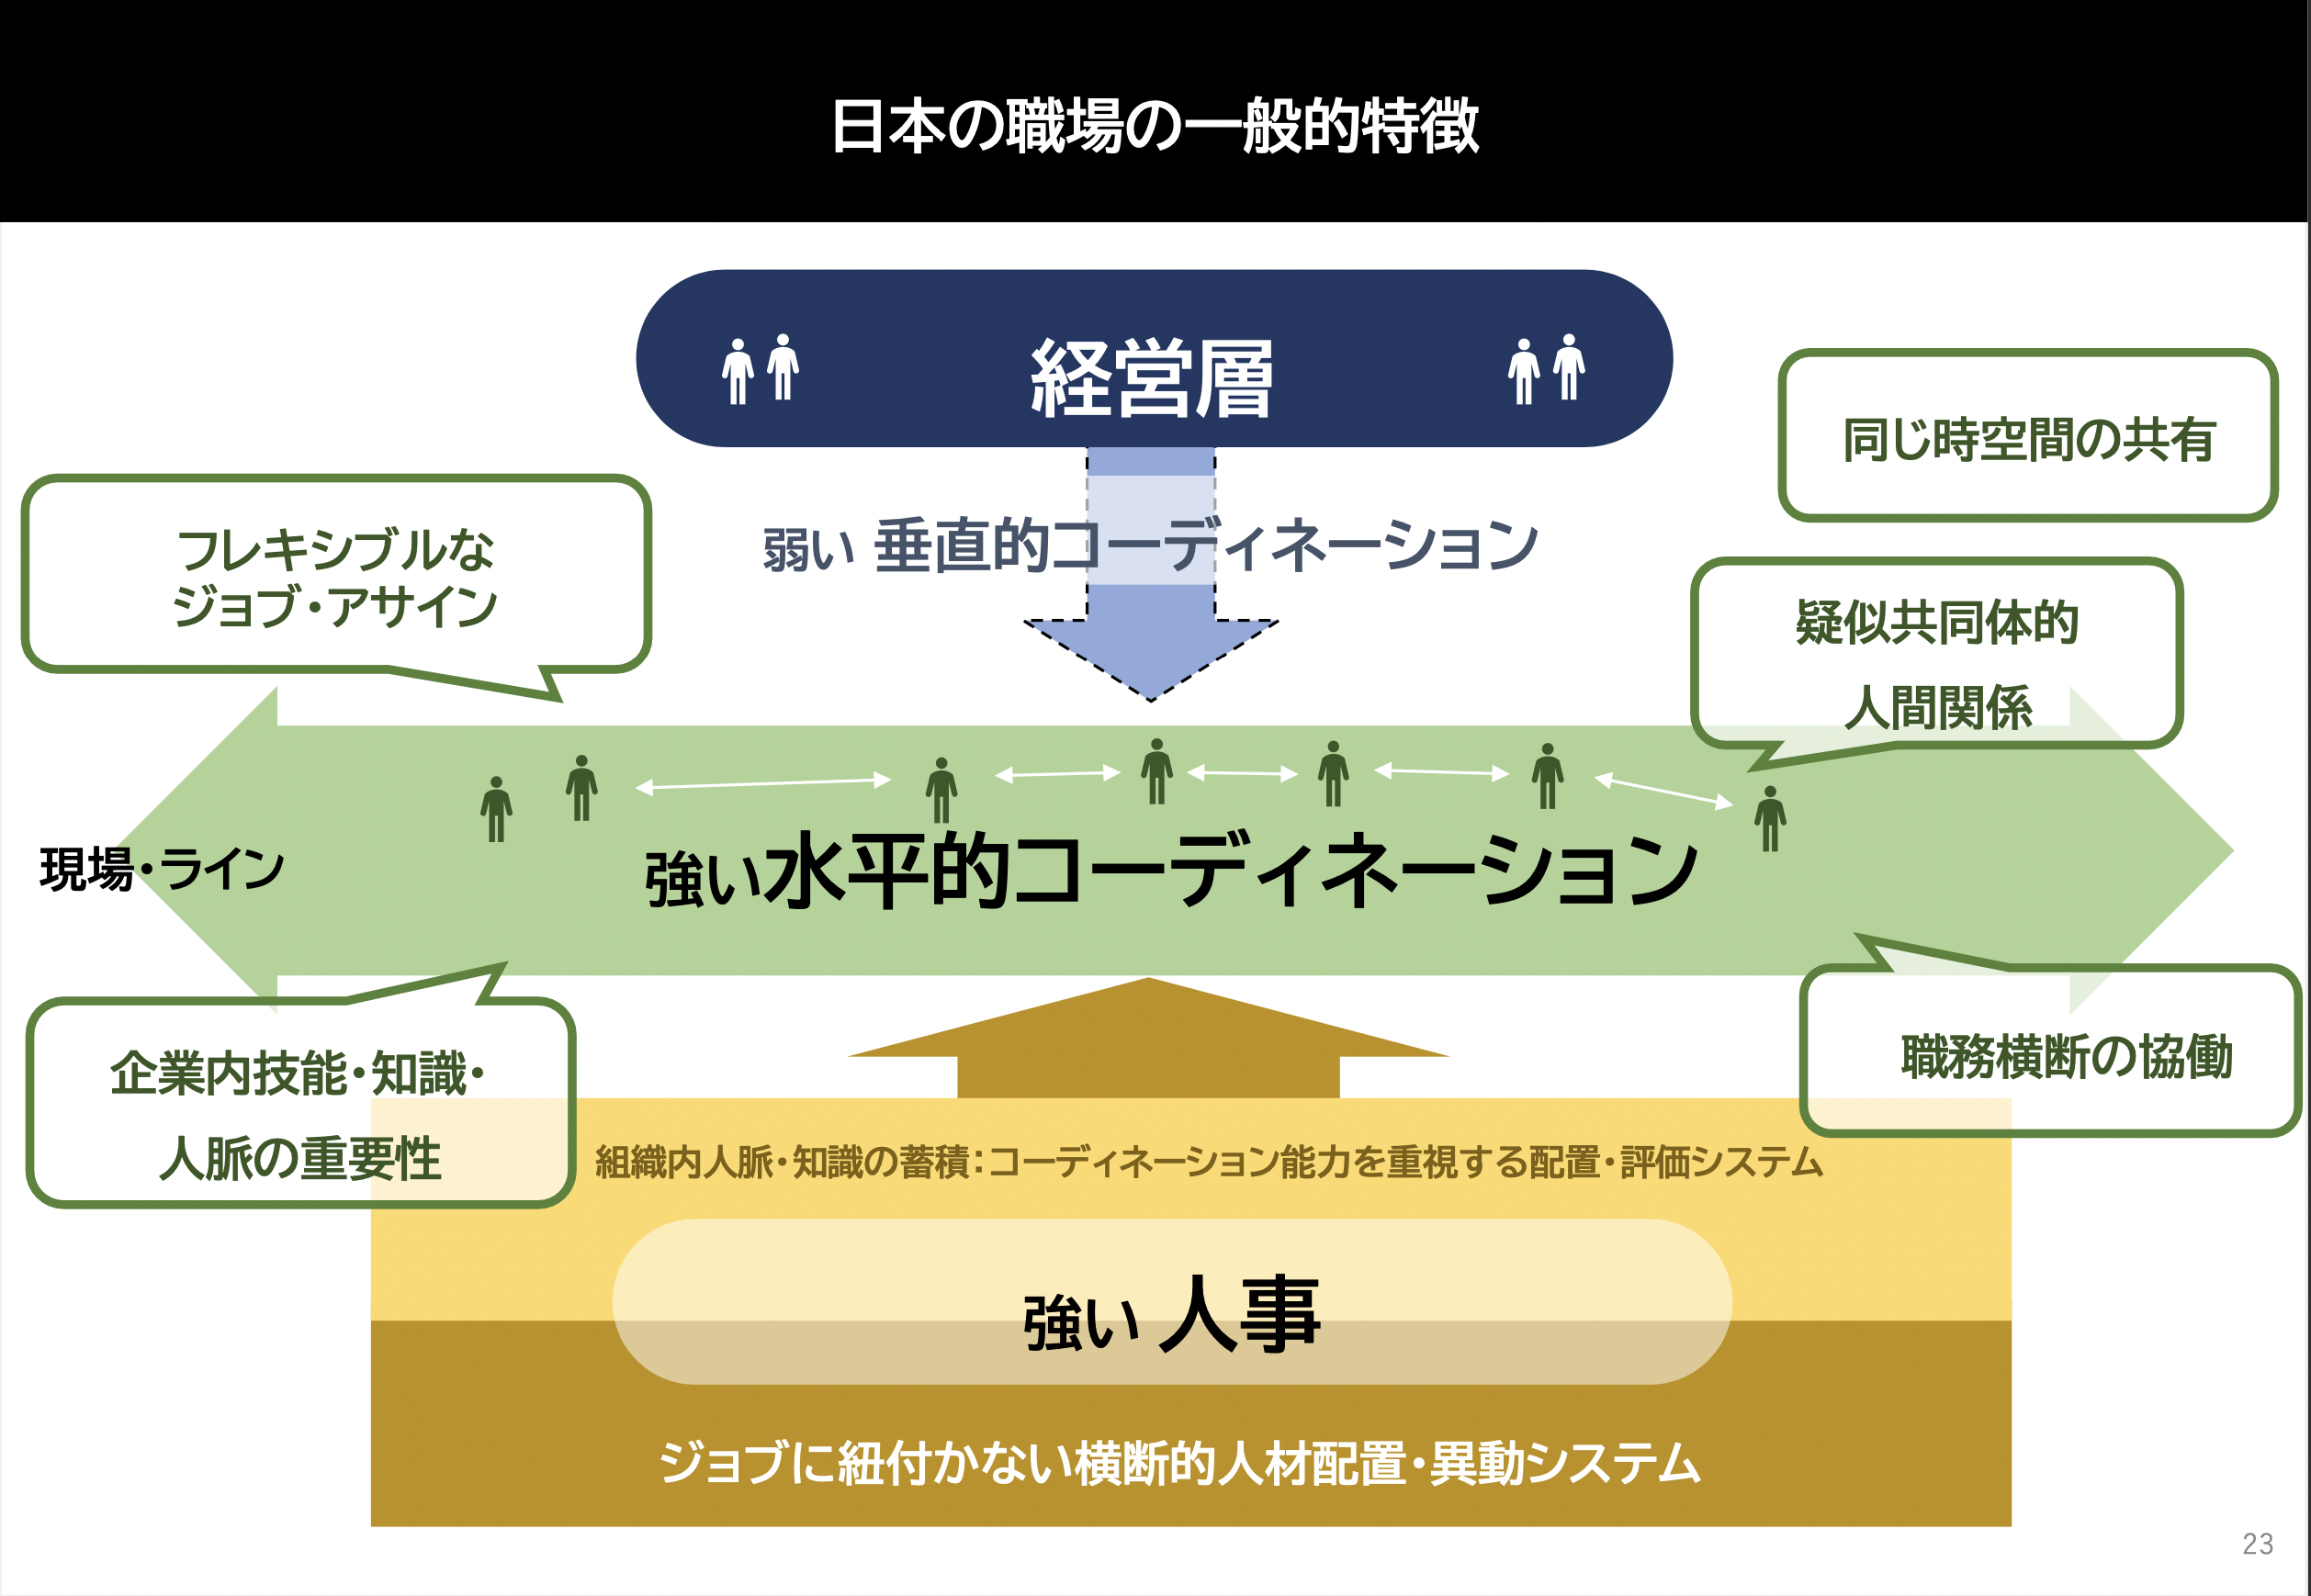 「日本の職場の一般的特徴」をまとめたスライド。水平的コーディネーション（横のつながり）に強みがある一方、垂直的コーディネーション（縦のつながり）は弱い